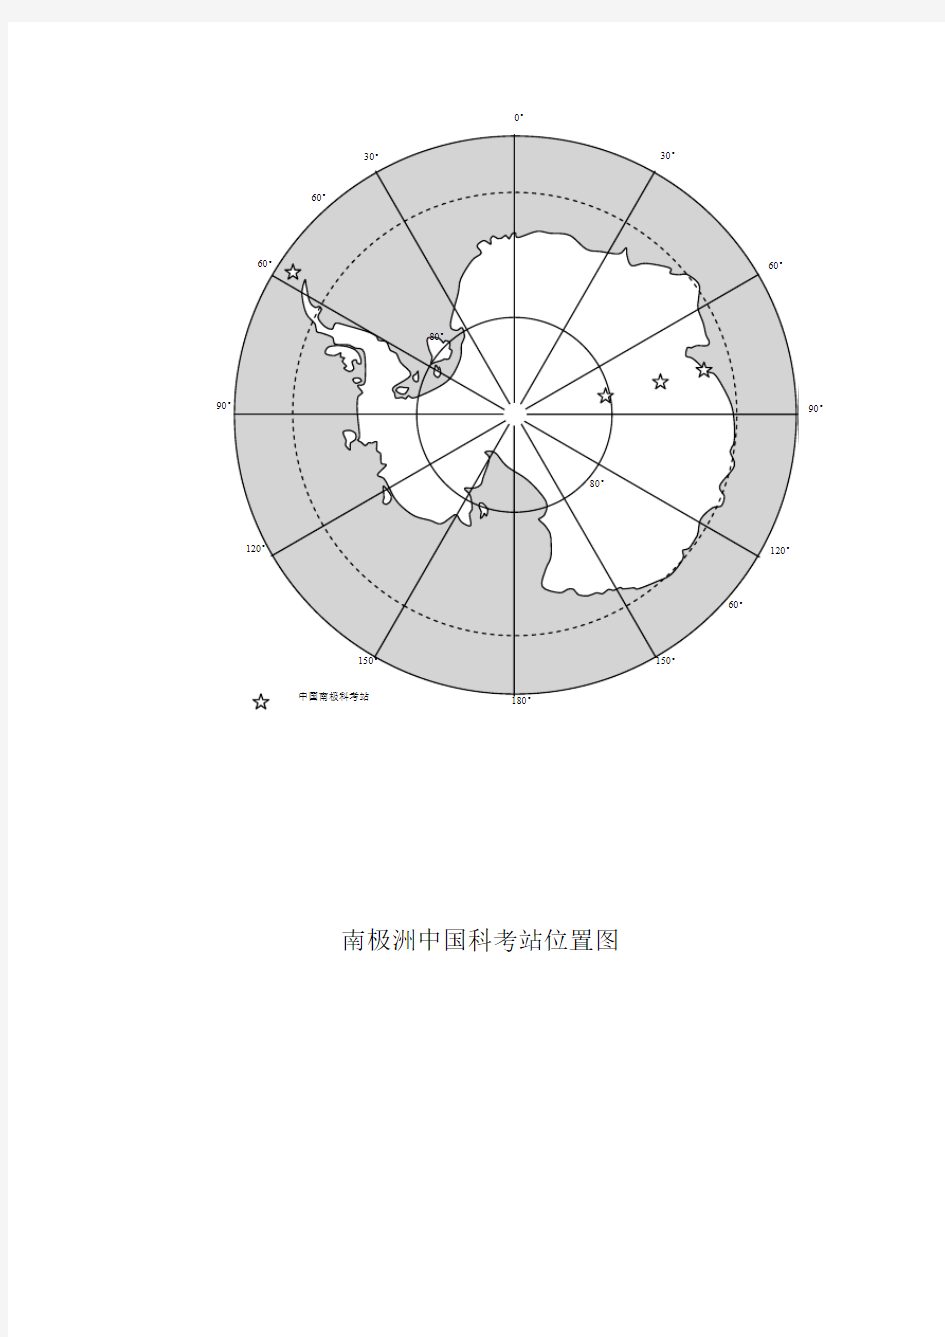 南极洲中国科考站位置图